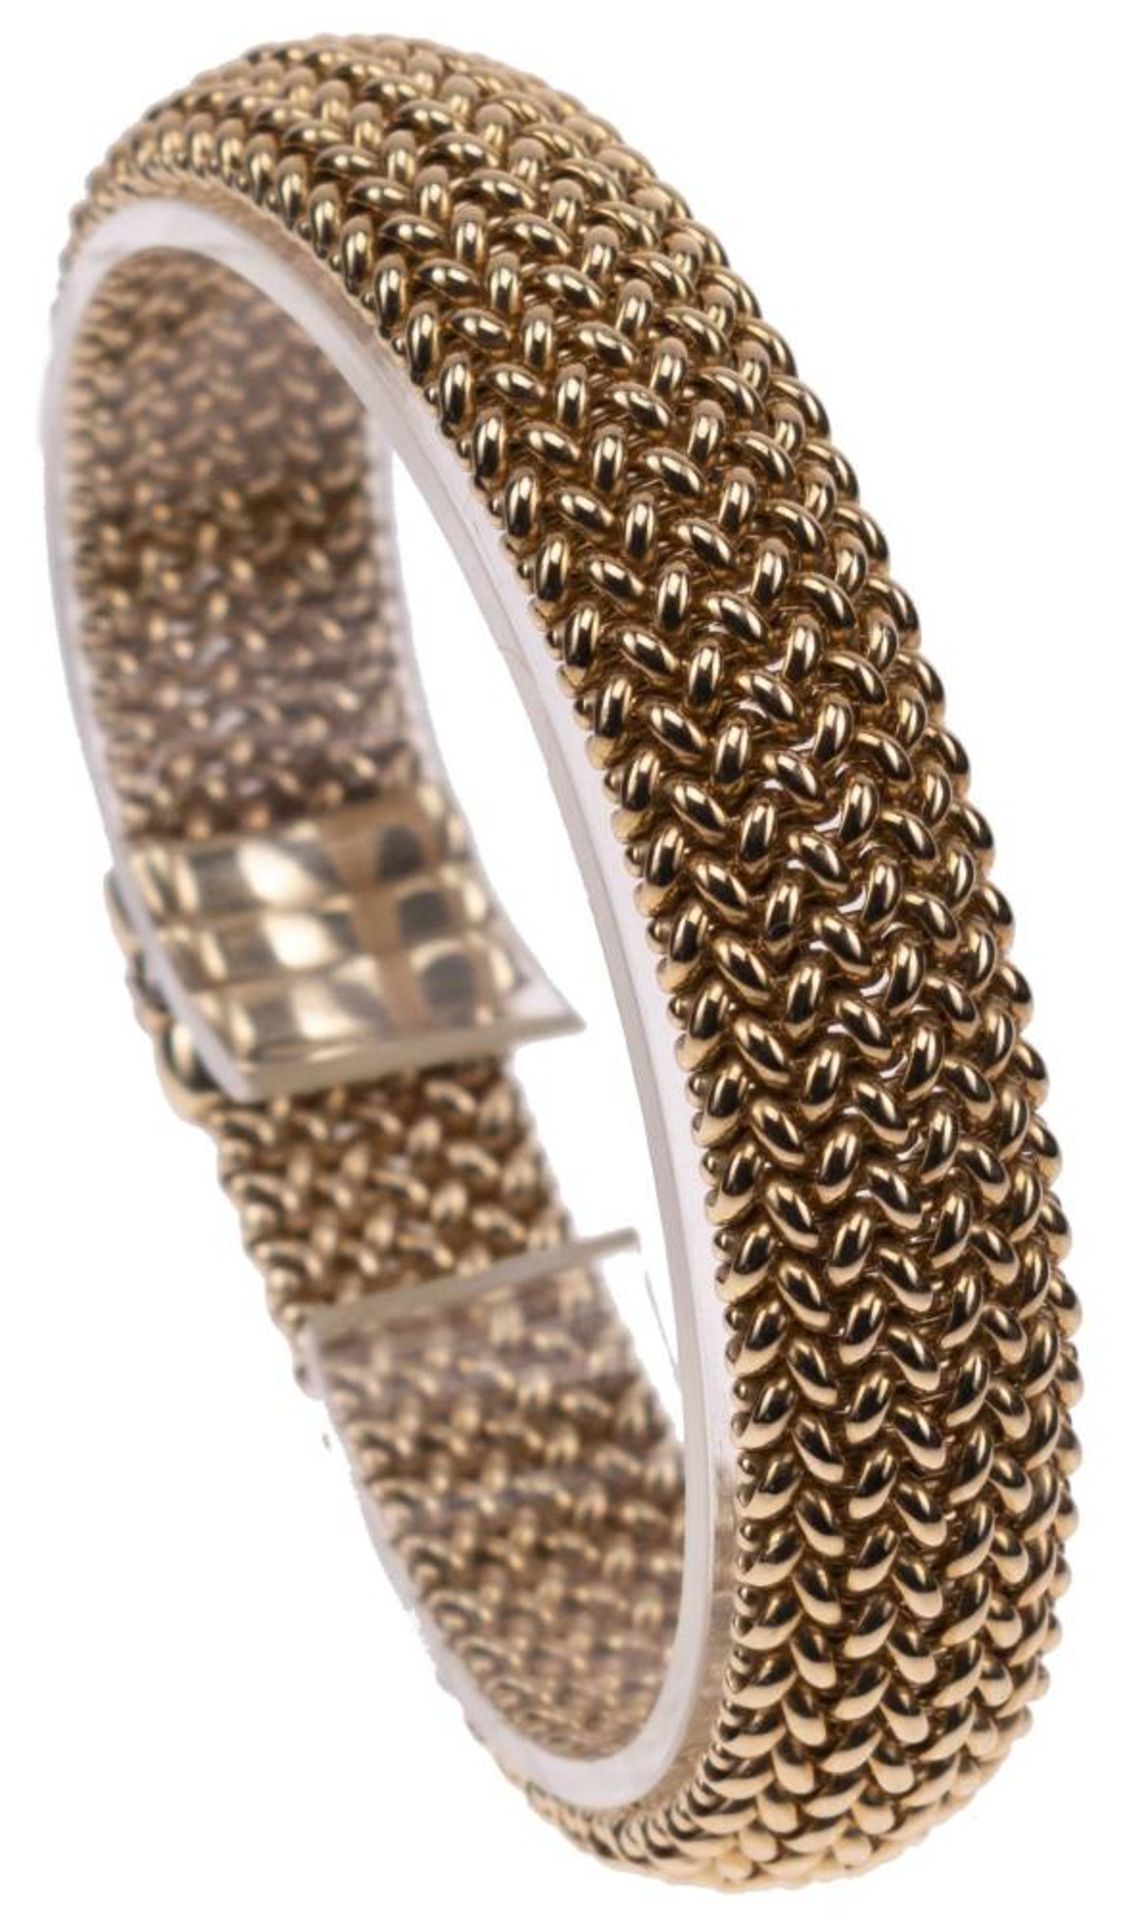 Milanaise Armband, 585 Gelbgold, Länge 19,5cm, Steckschließe mit Clipverschluss, fast ungetragen, - Image 2 of 6